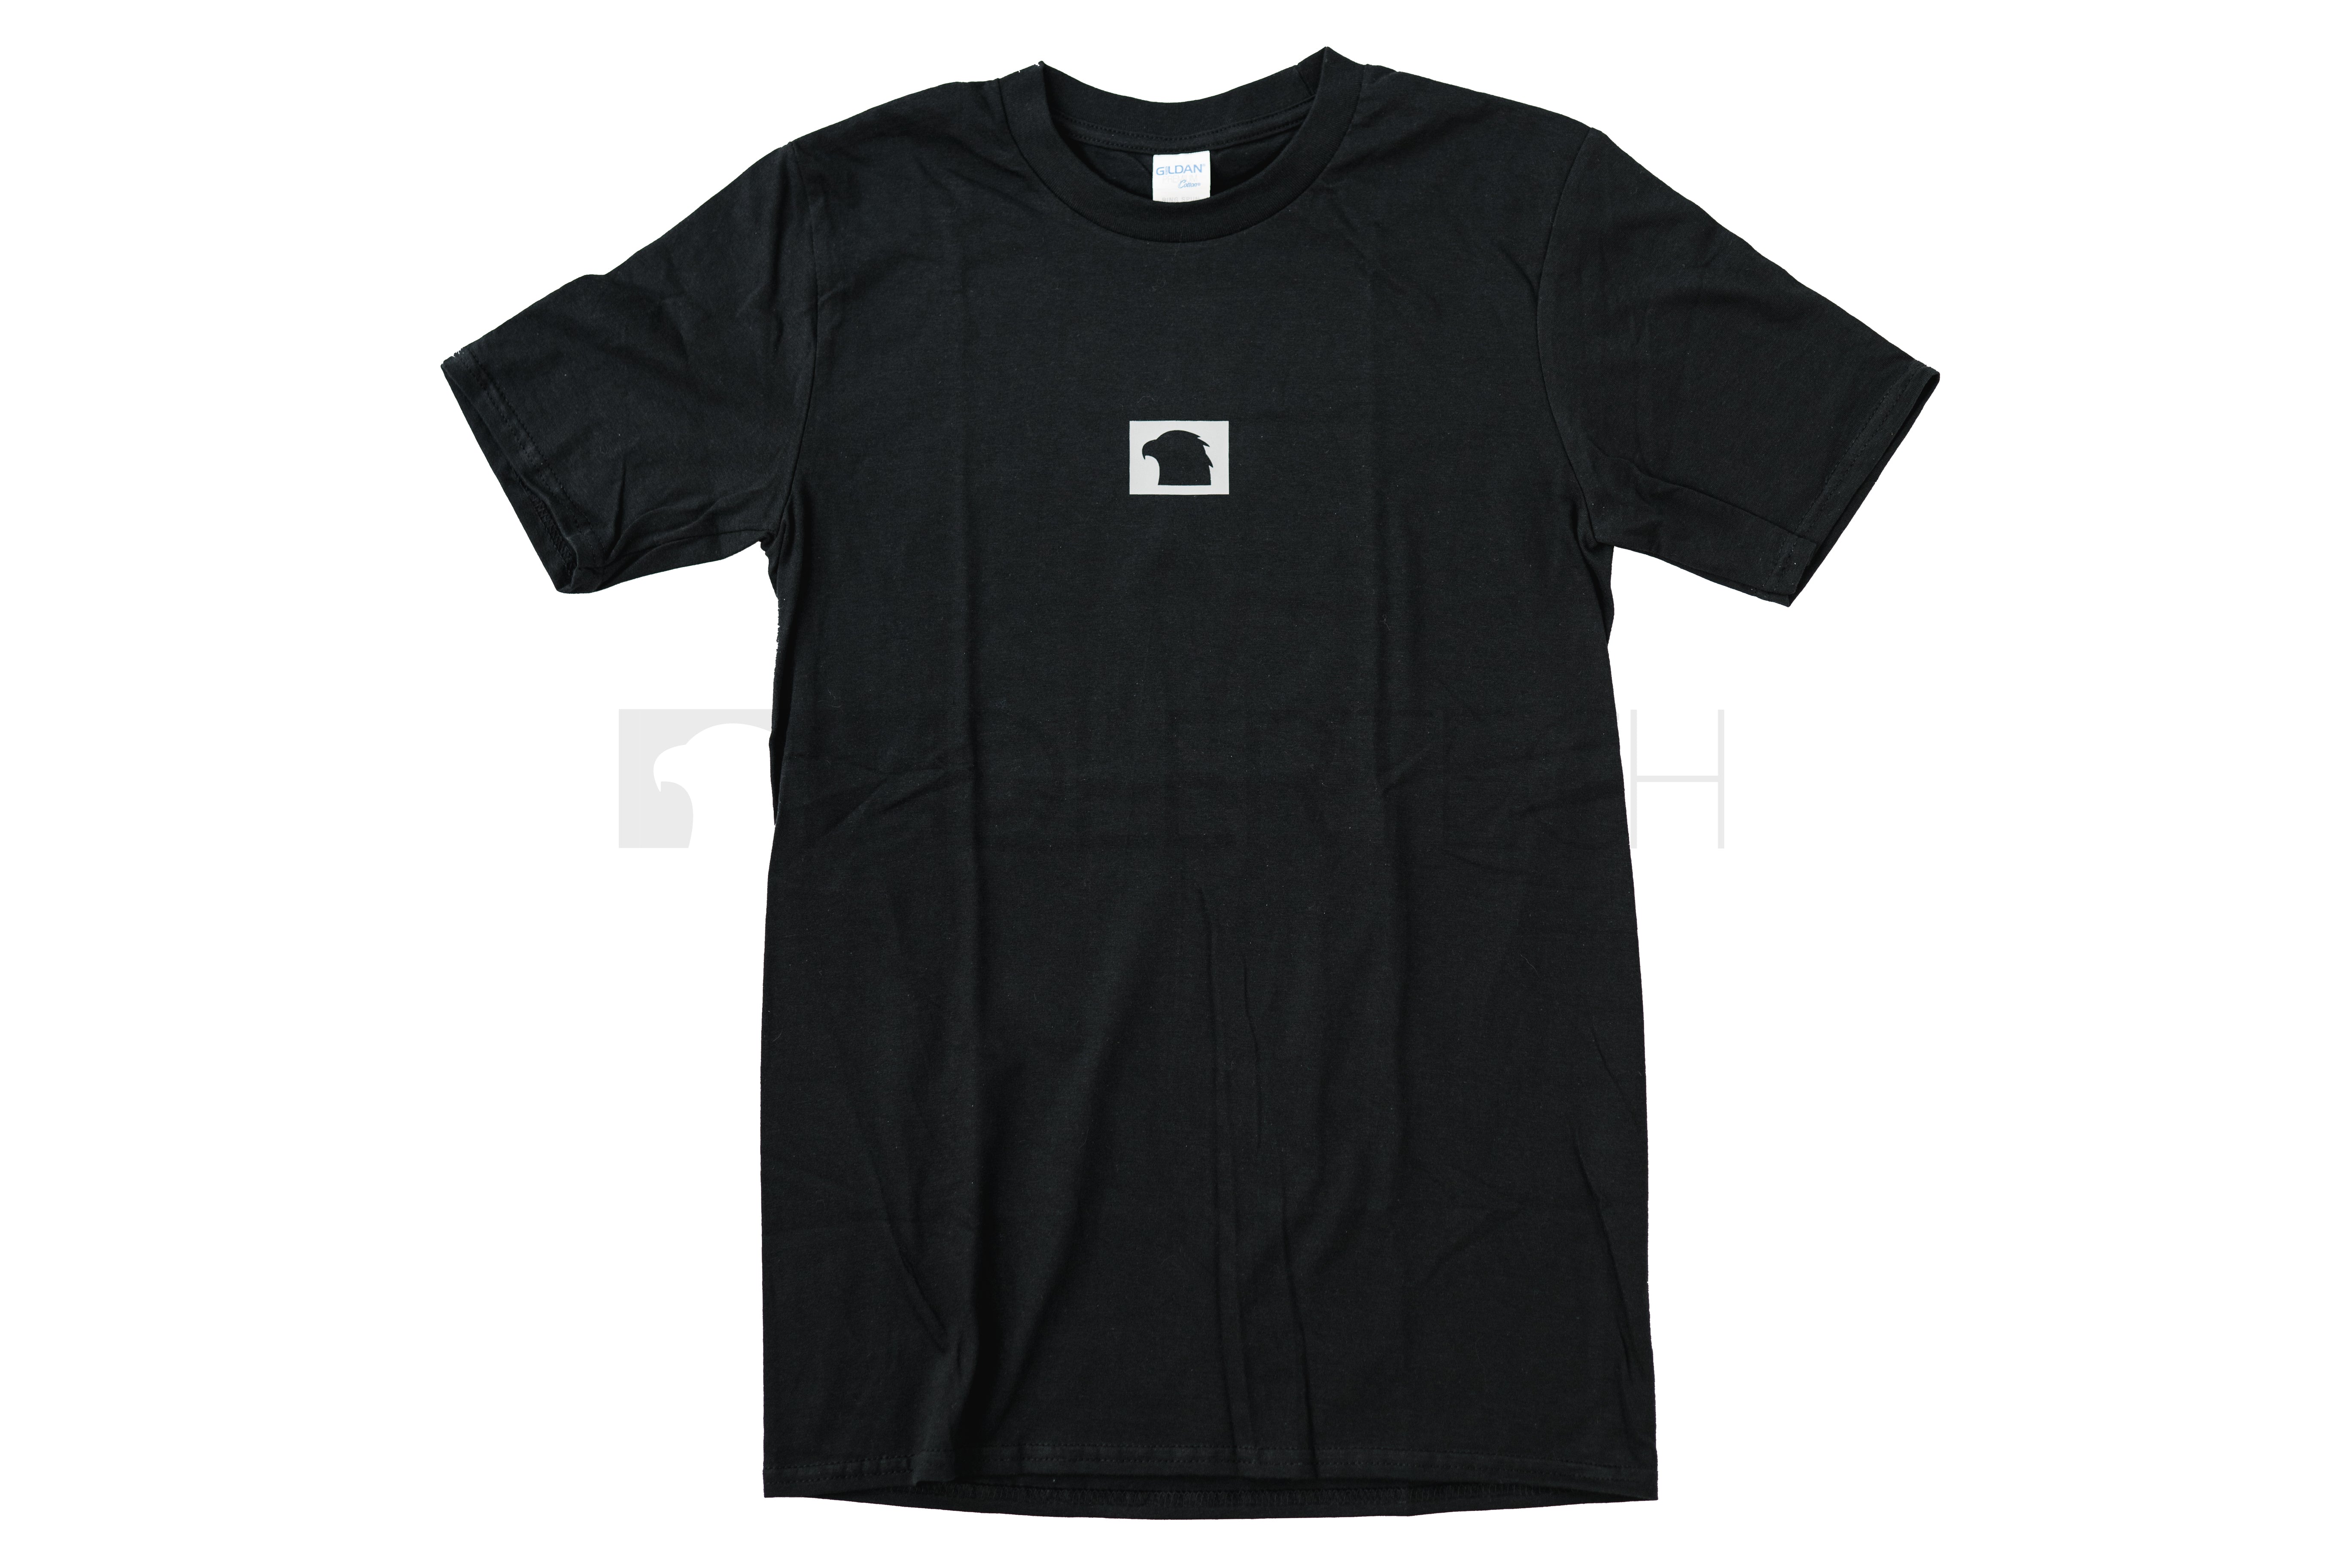 T-Shirt AdlerTech schwarz